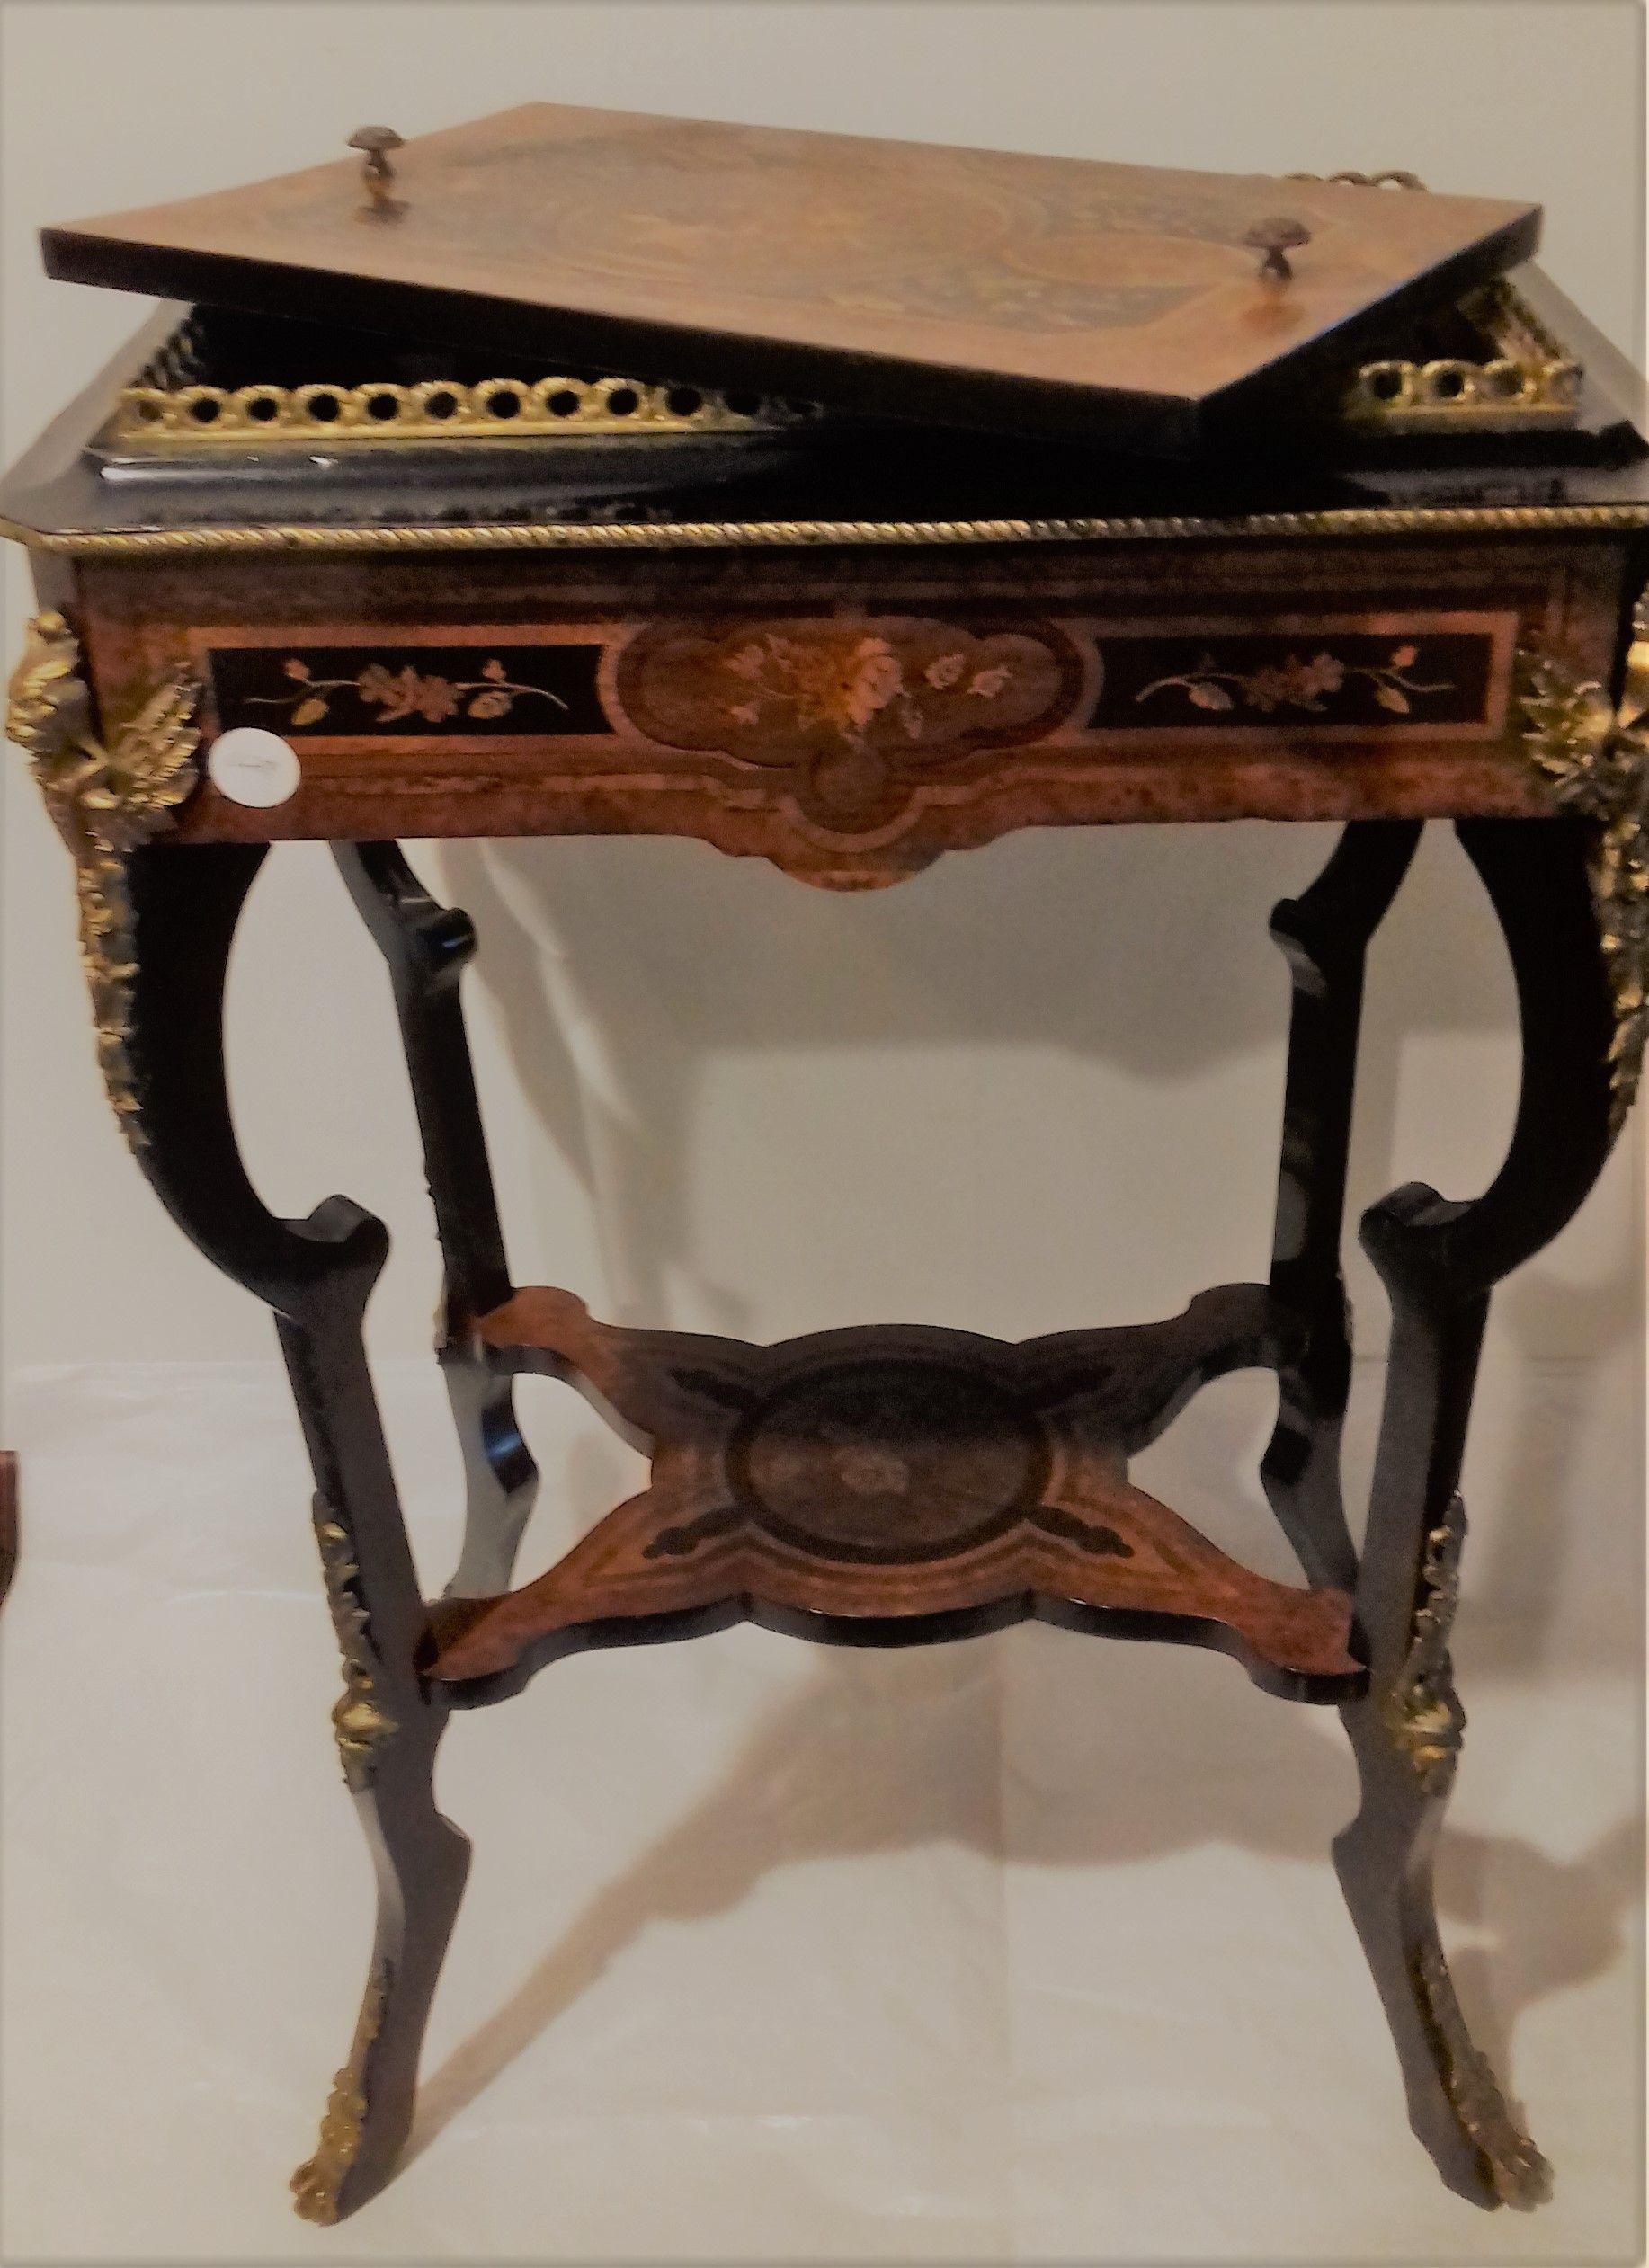 Antico tavolino francese porta ghiaccio del 1800 con intarsi e bronzi